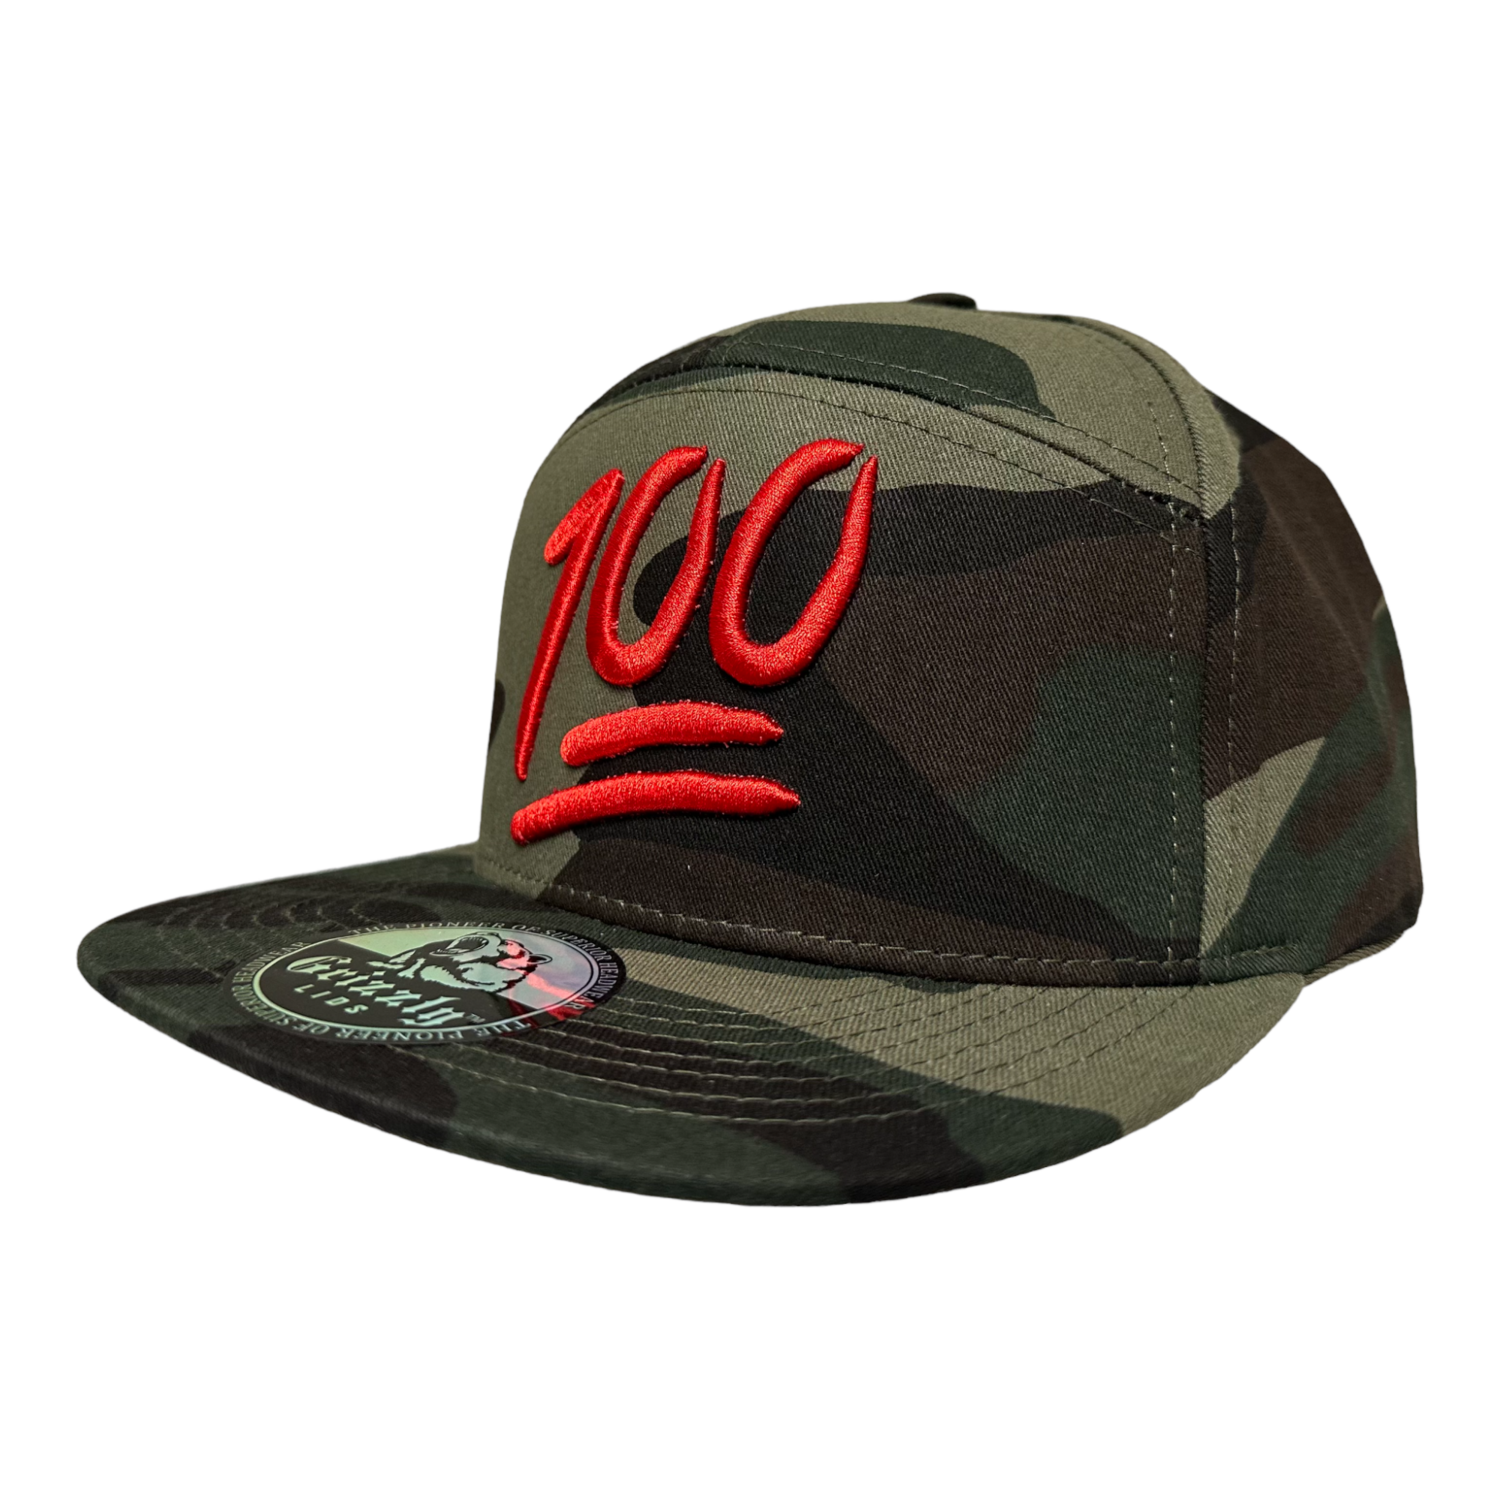 Keep It 100 Snapback 6 Panel Adjustable Snap Fit Hat